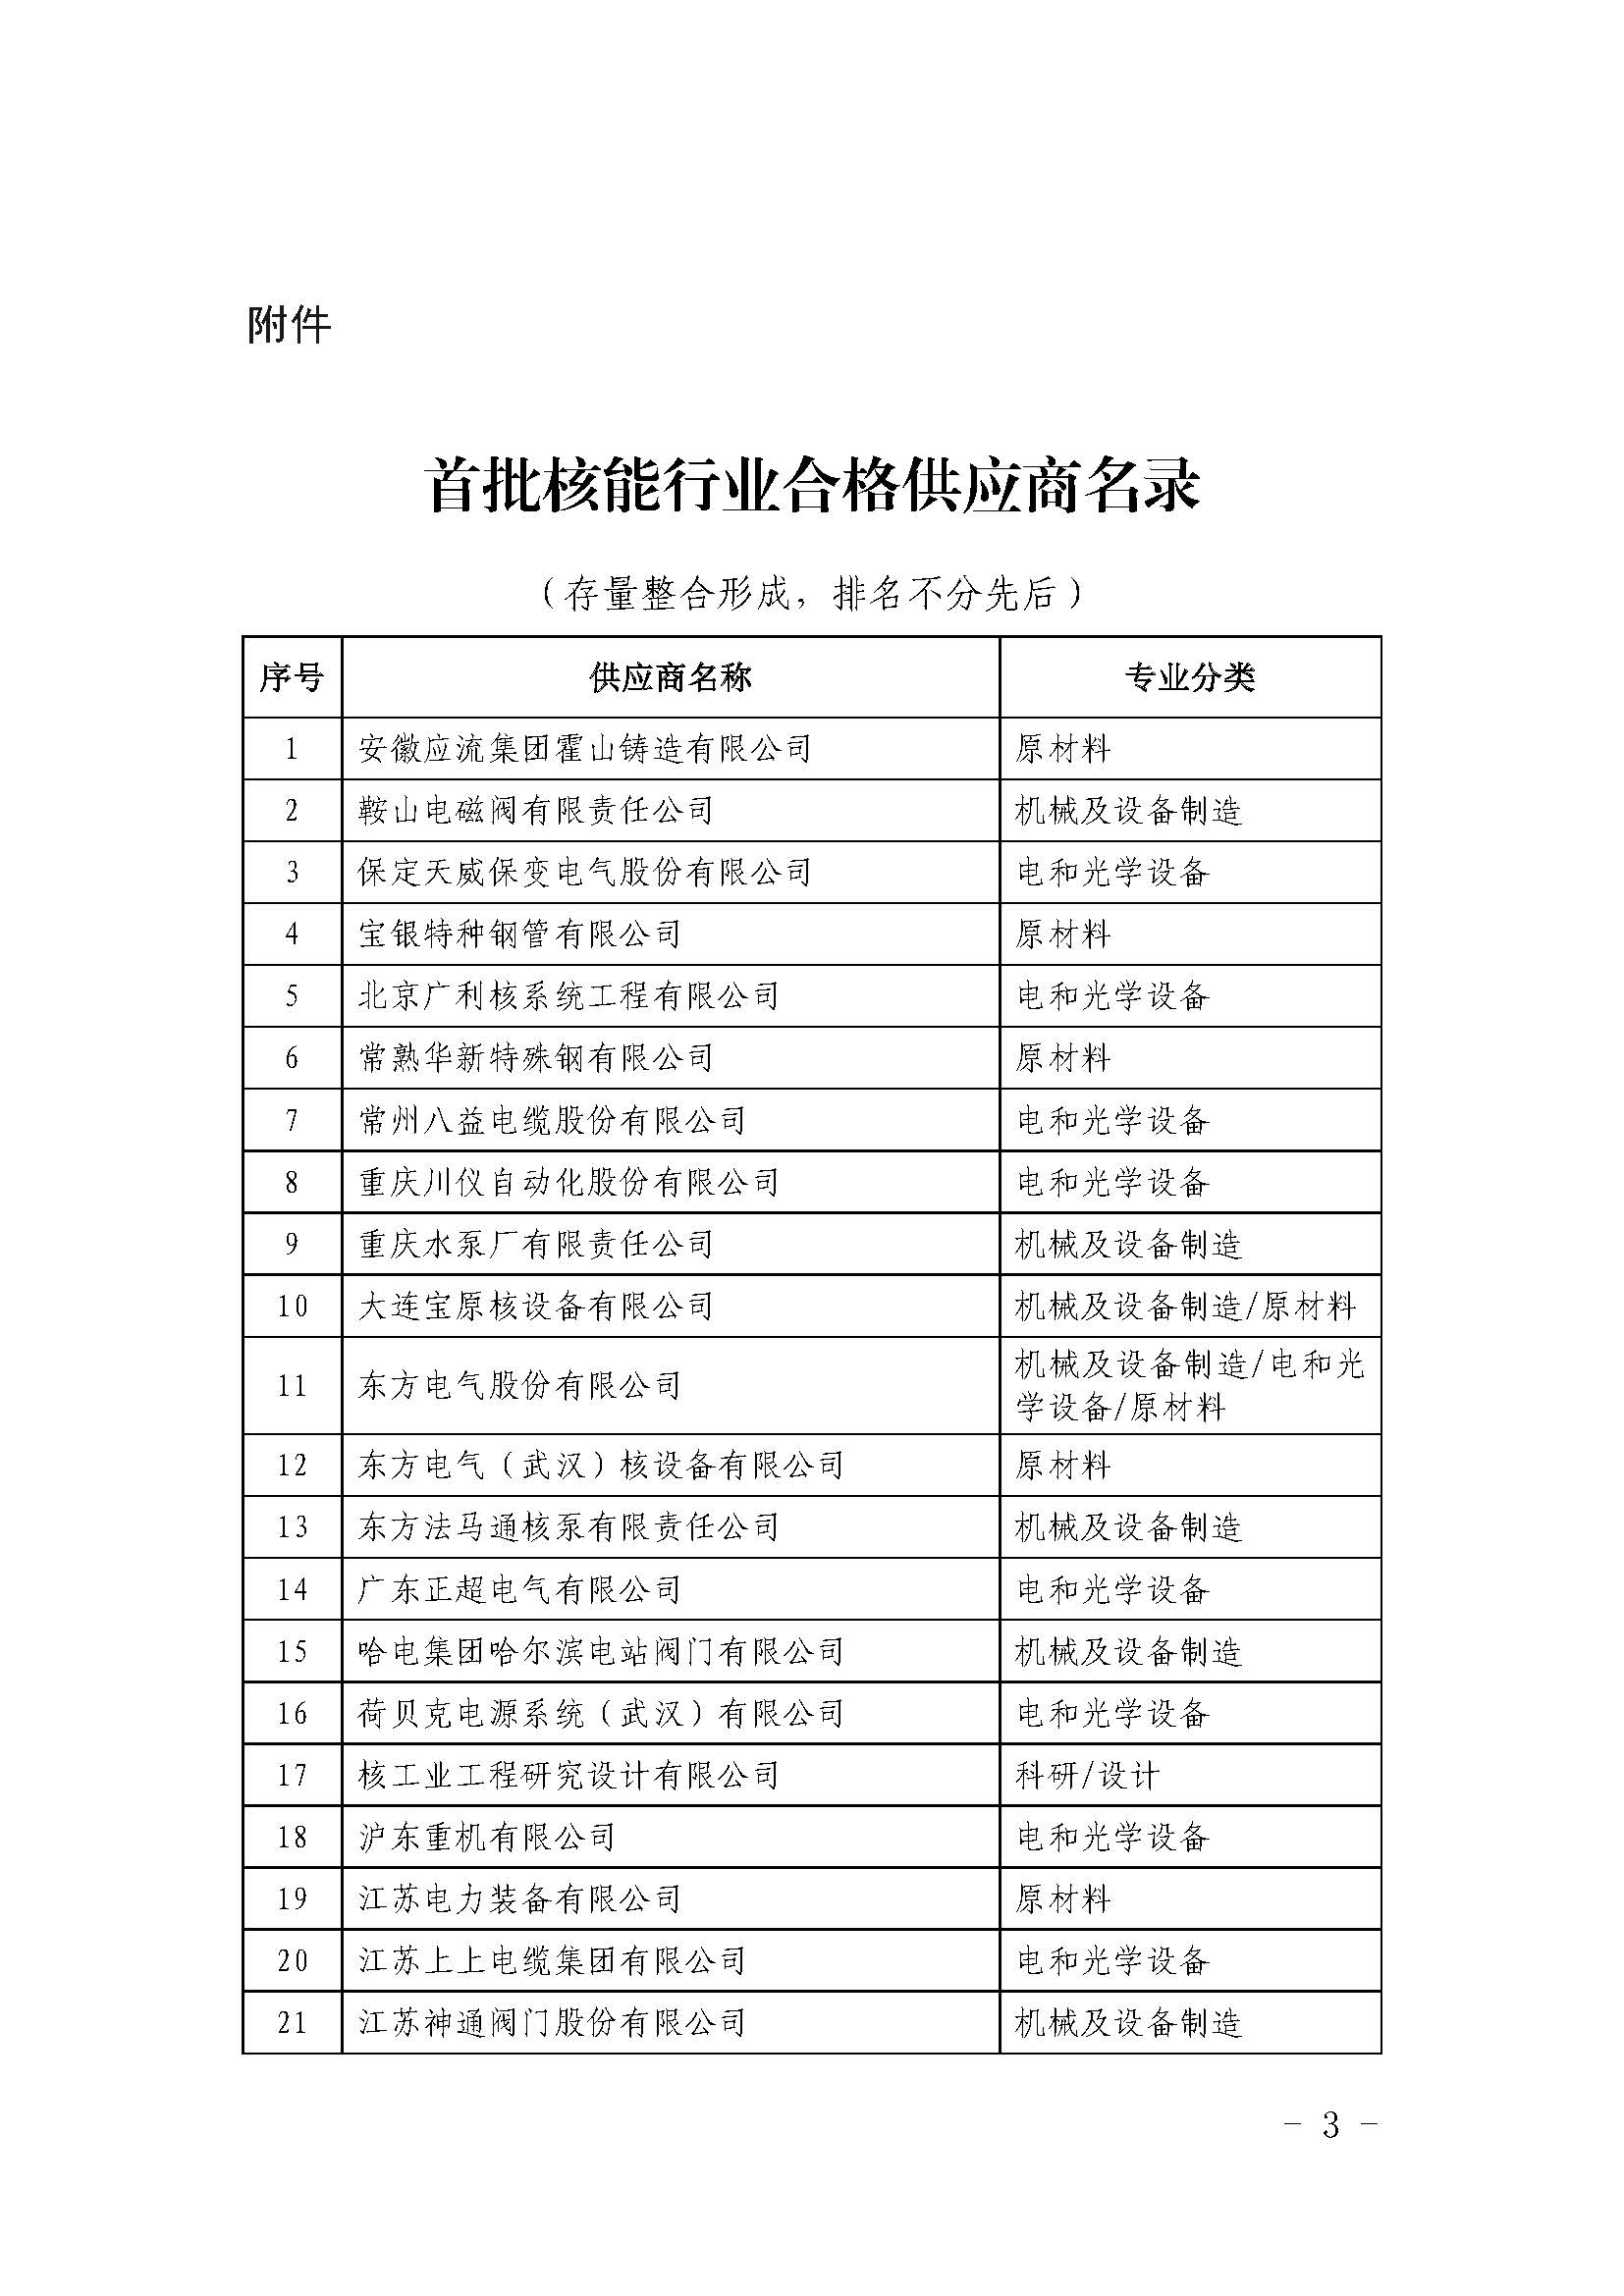 关于发布中国核能行业协会首批核能行业合格供应商名录的公告_页面_3.jpg